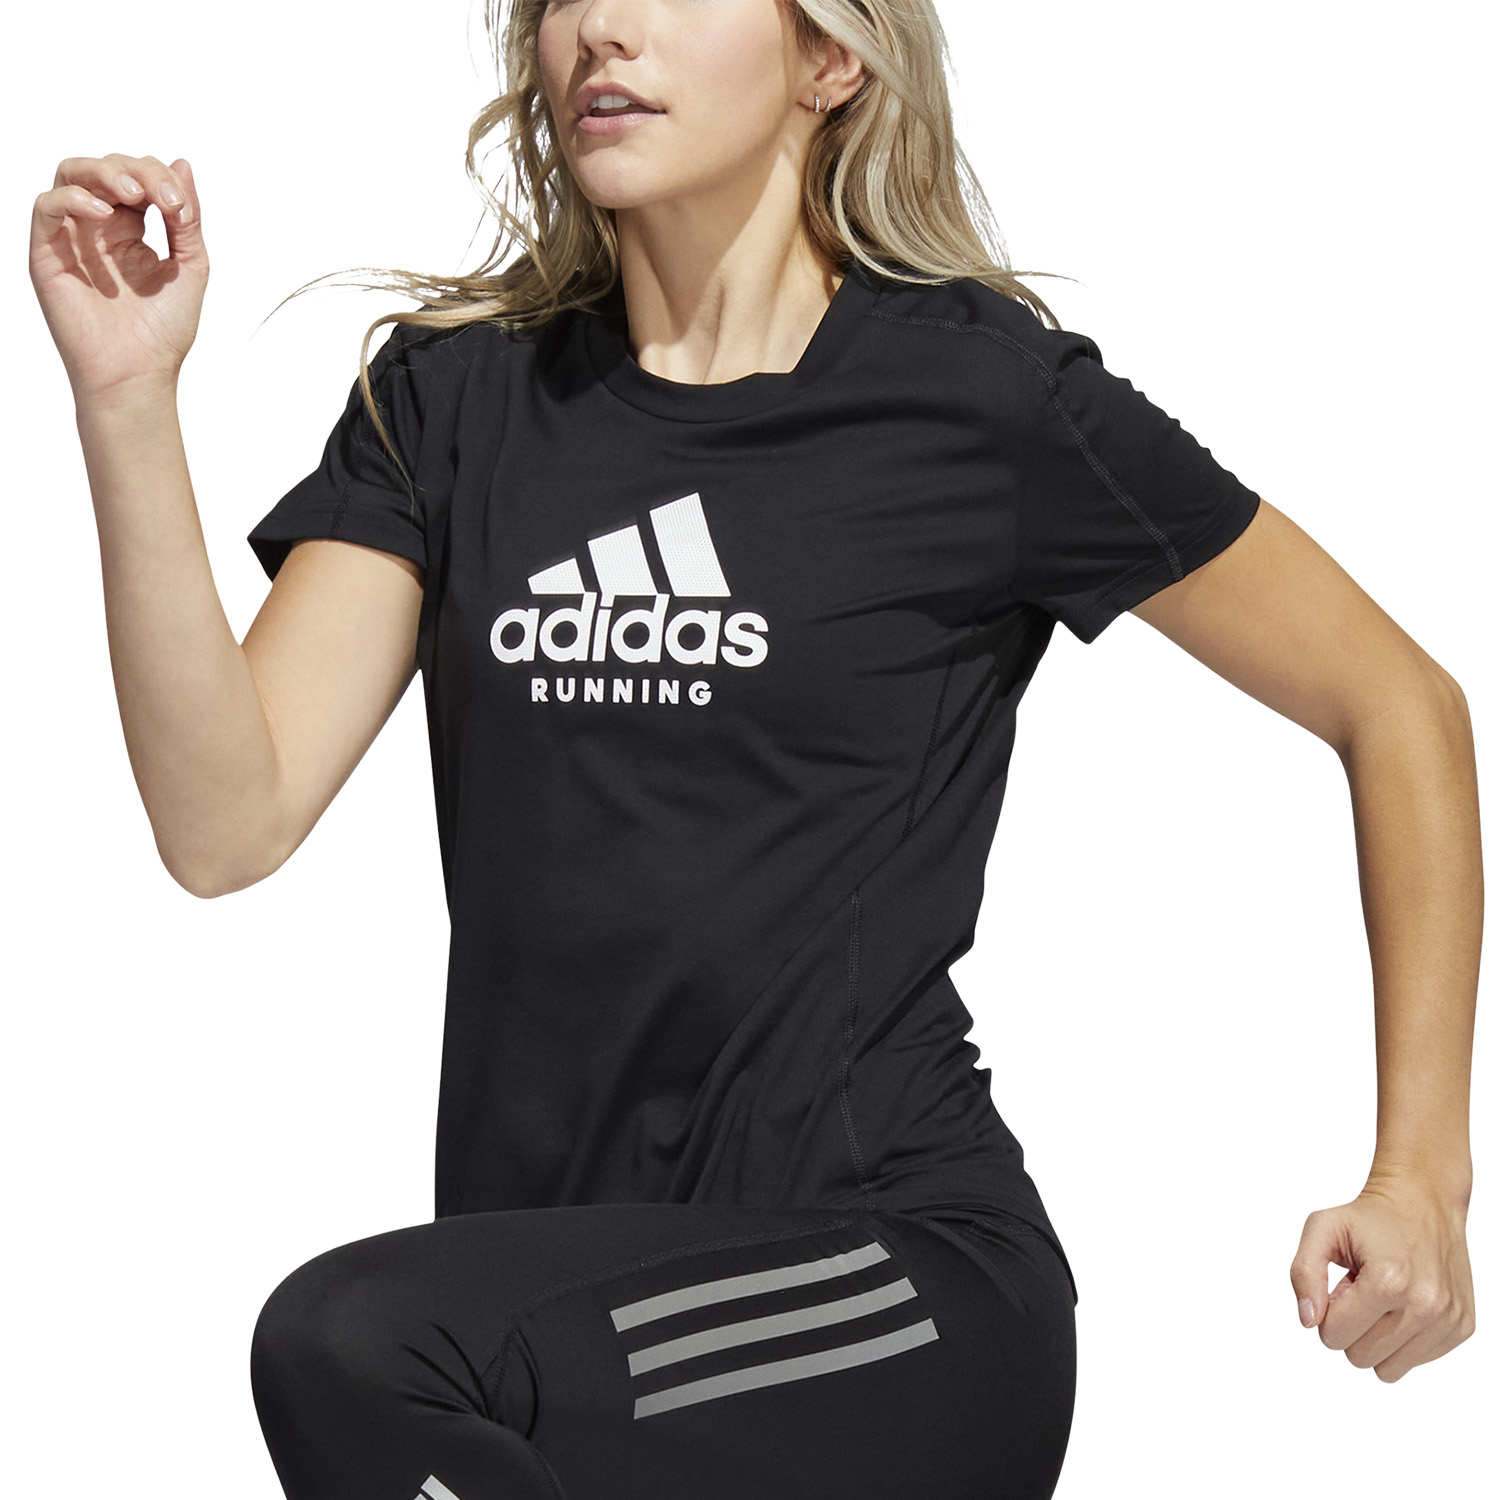 adidas Jersey Logo Camiseta Running Mujer - Black